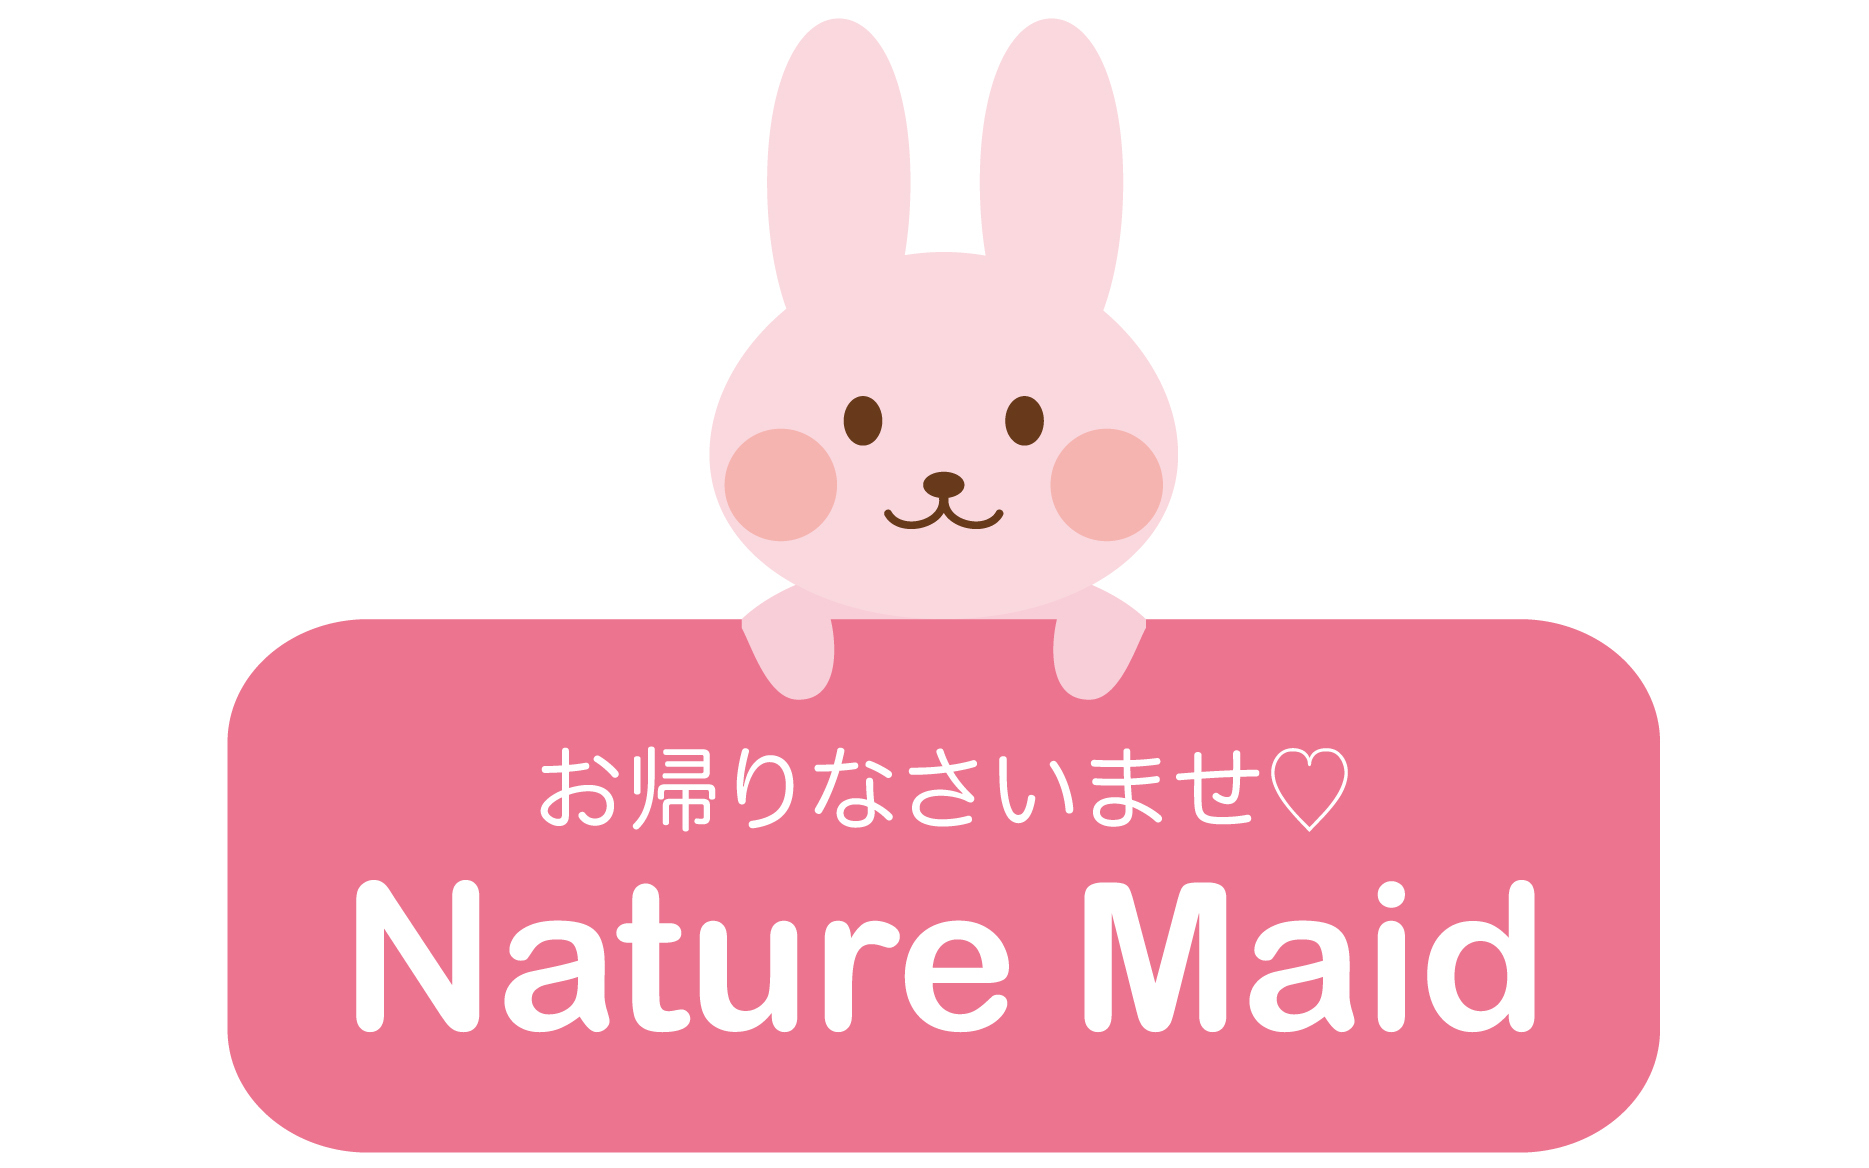 お帰りなさいませ　Nature　Maid